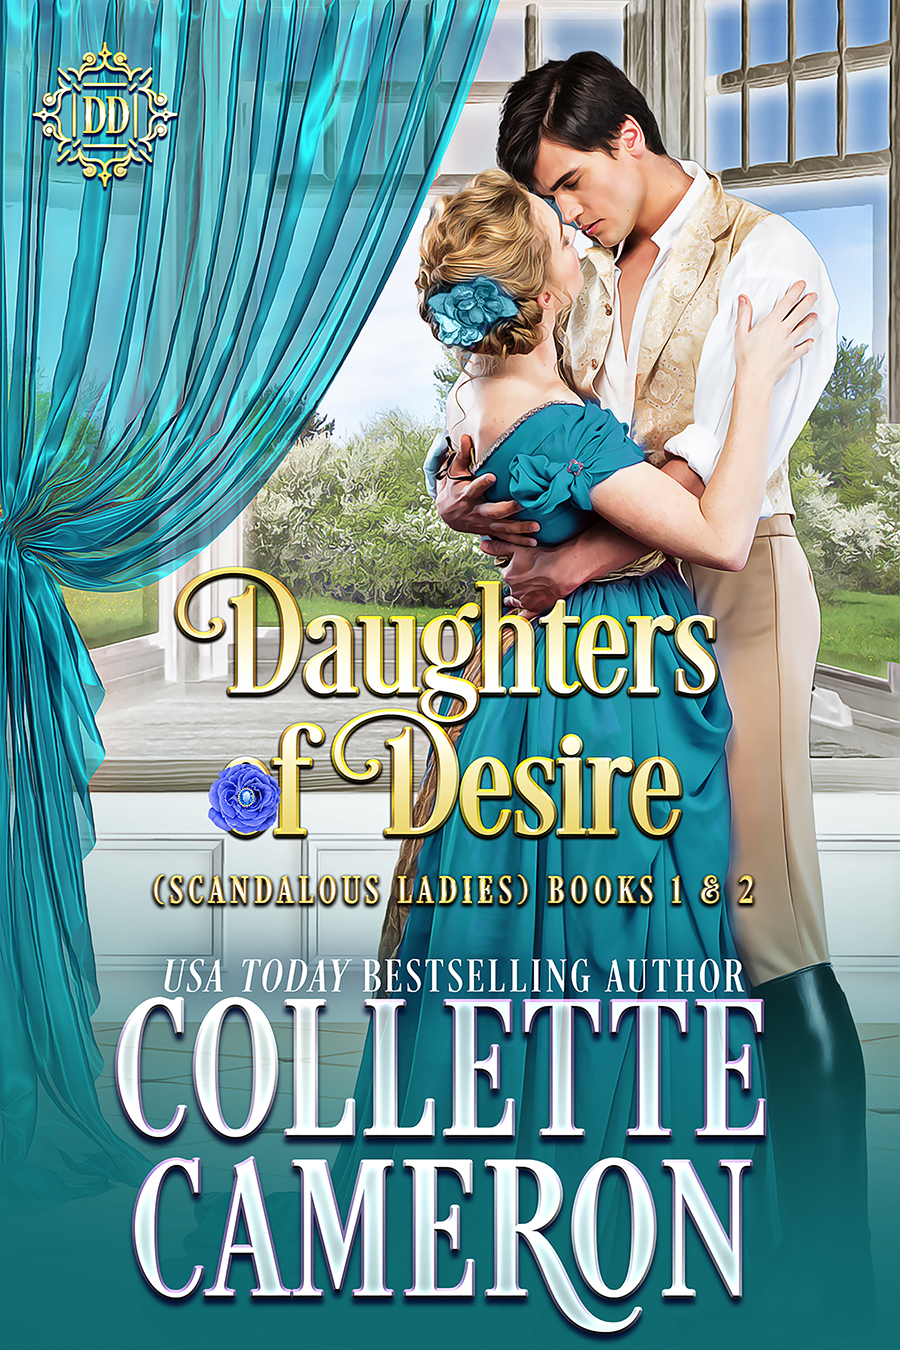 Collette's Historical Romances 6